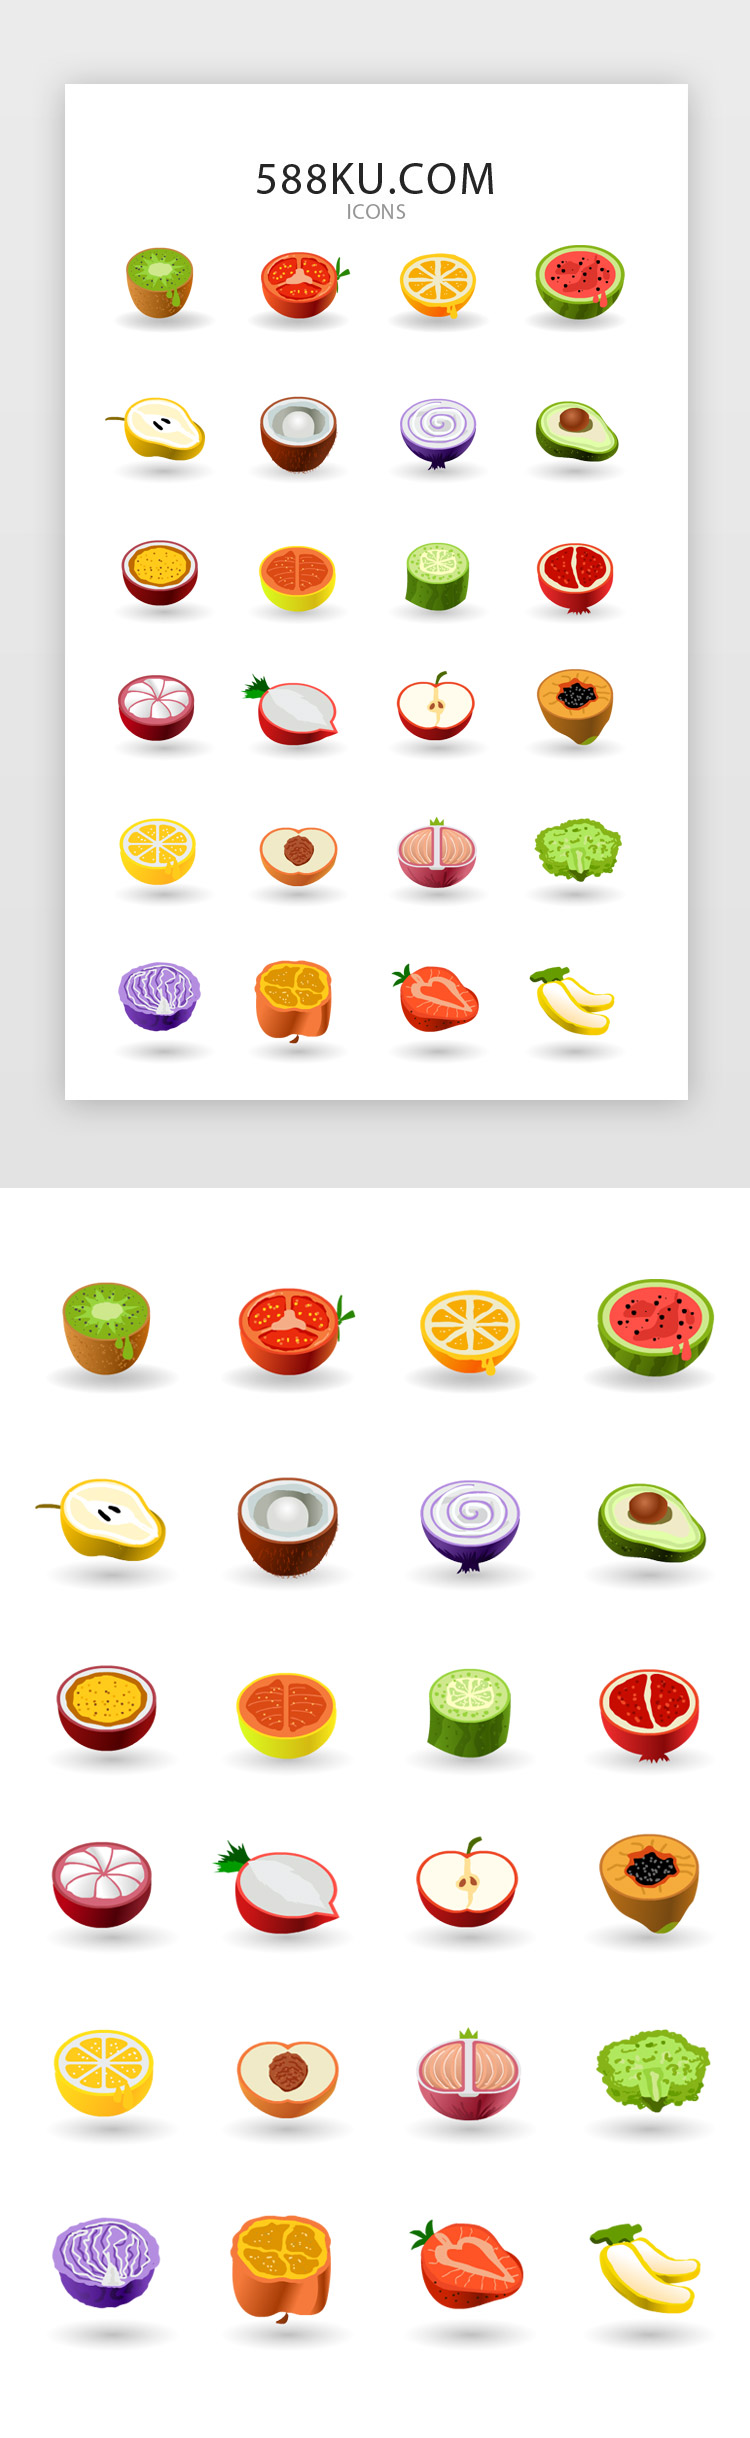 彩色风格果蔬电商品类矢量icon图标生鲜图片